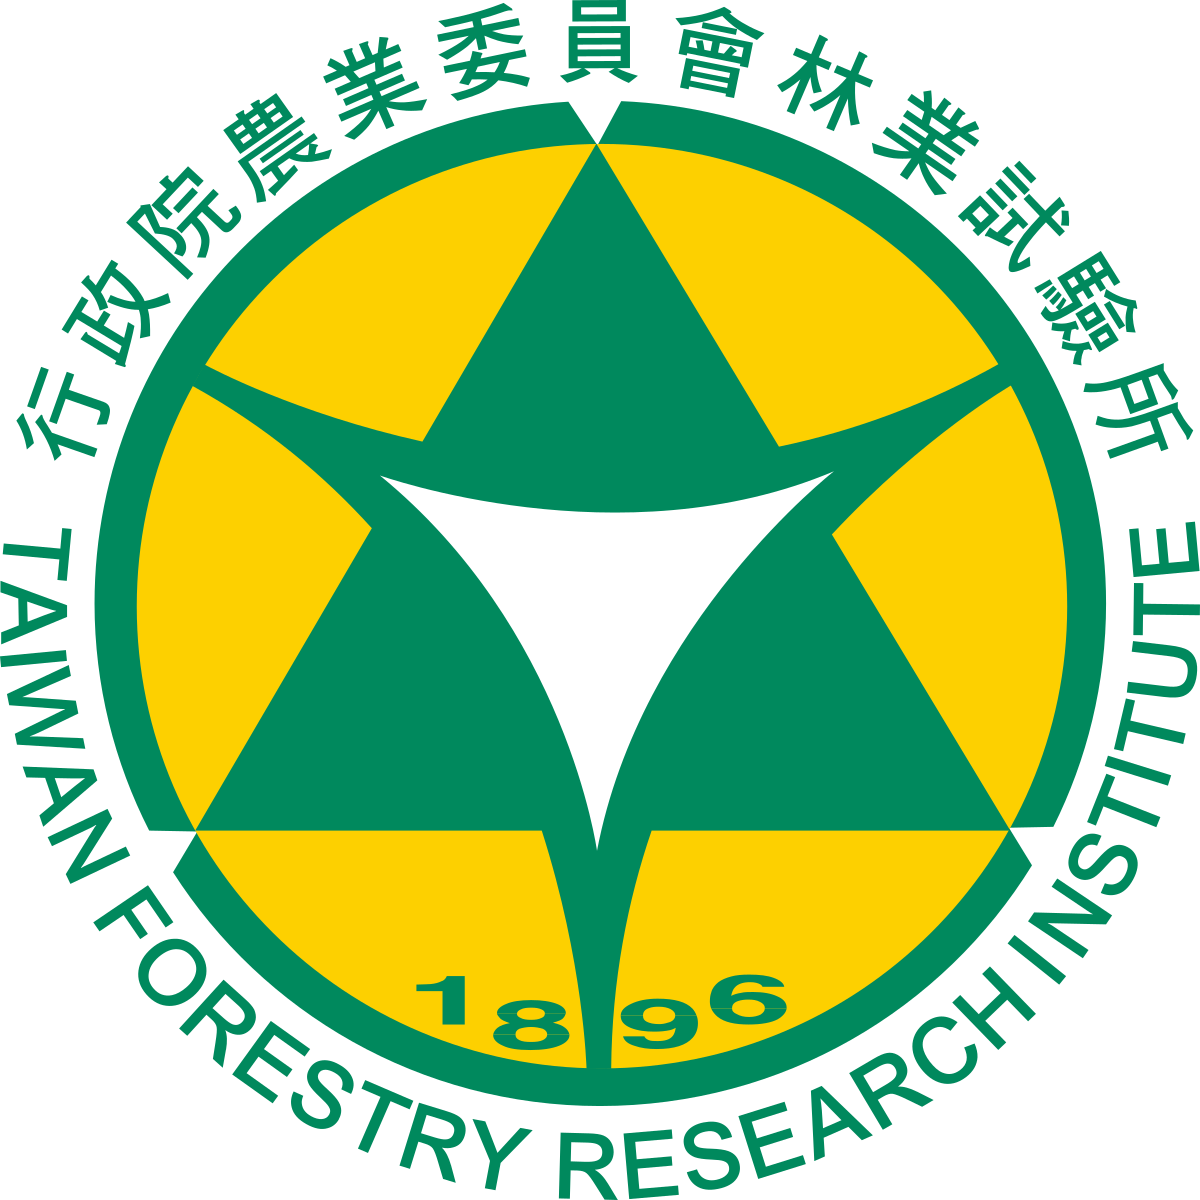 Green and yellow geometric logo